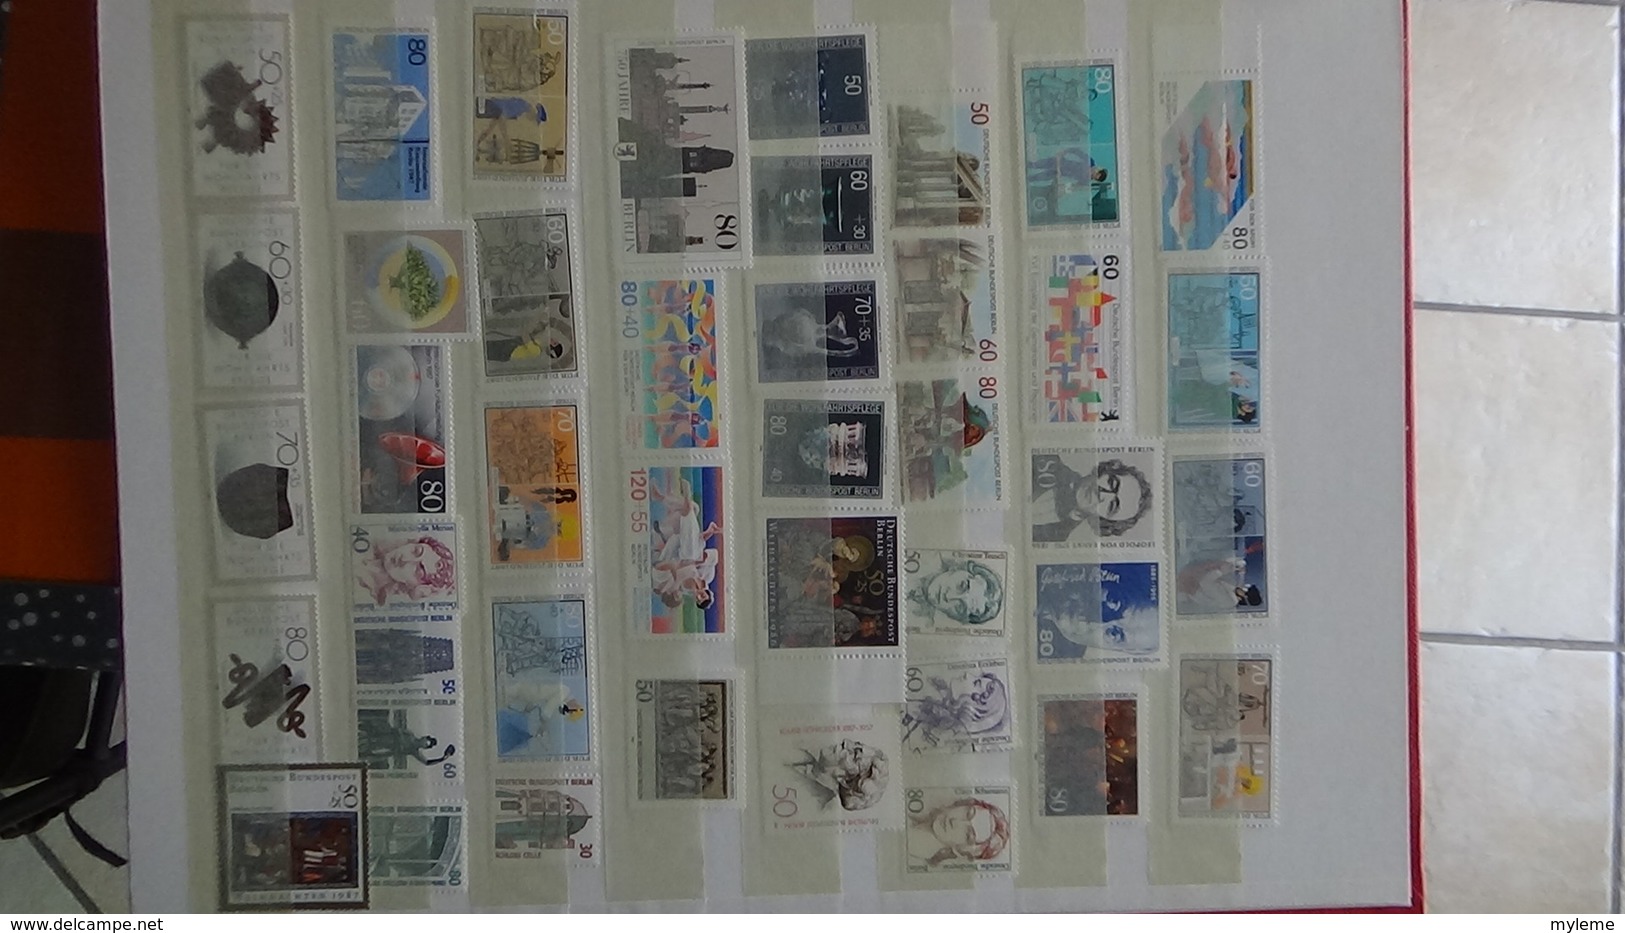 B377 Collection timbres et blocs ** d'Allemagne. A saisir !!!